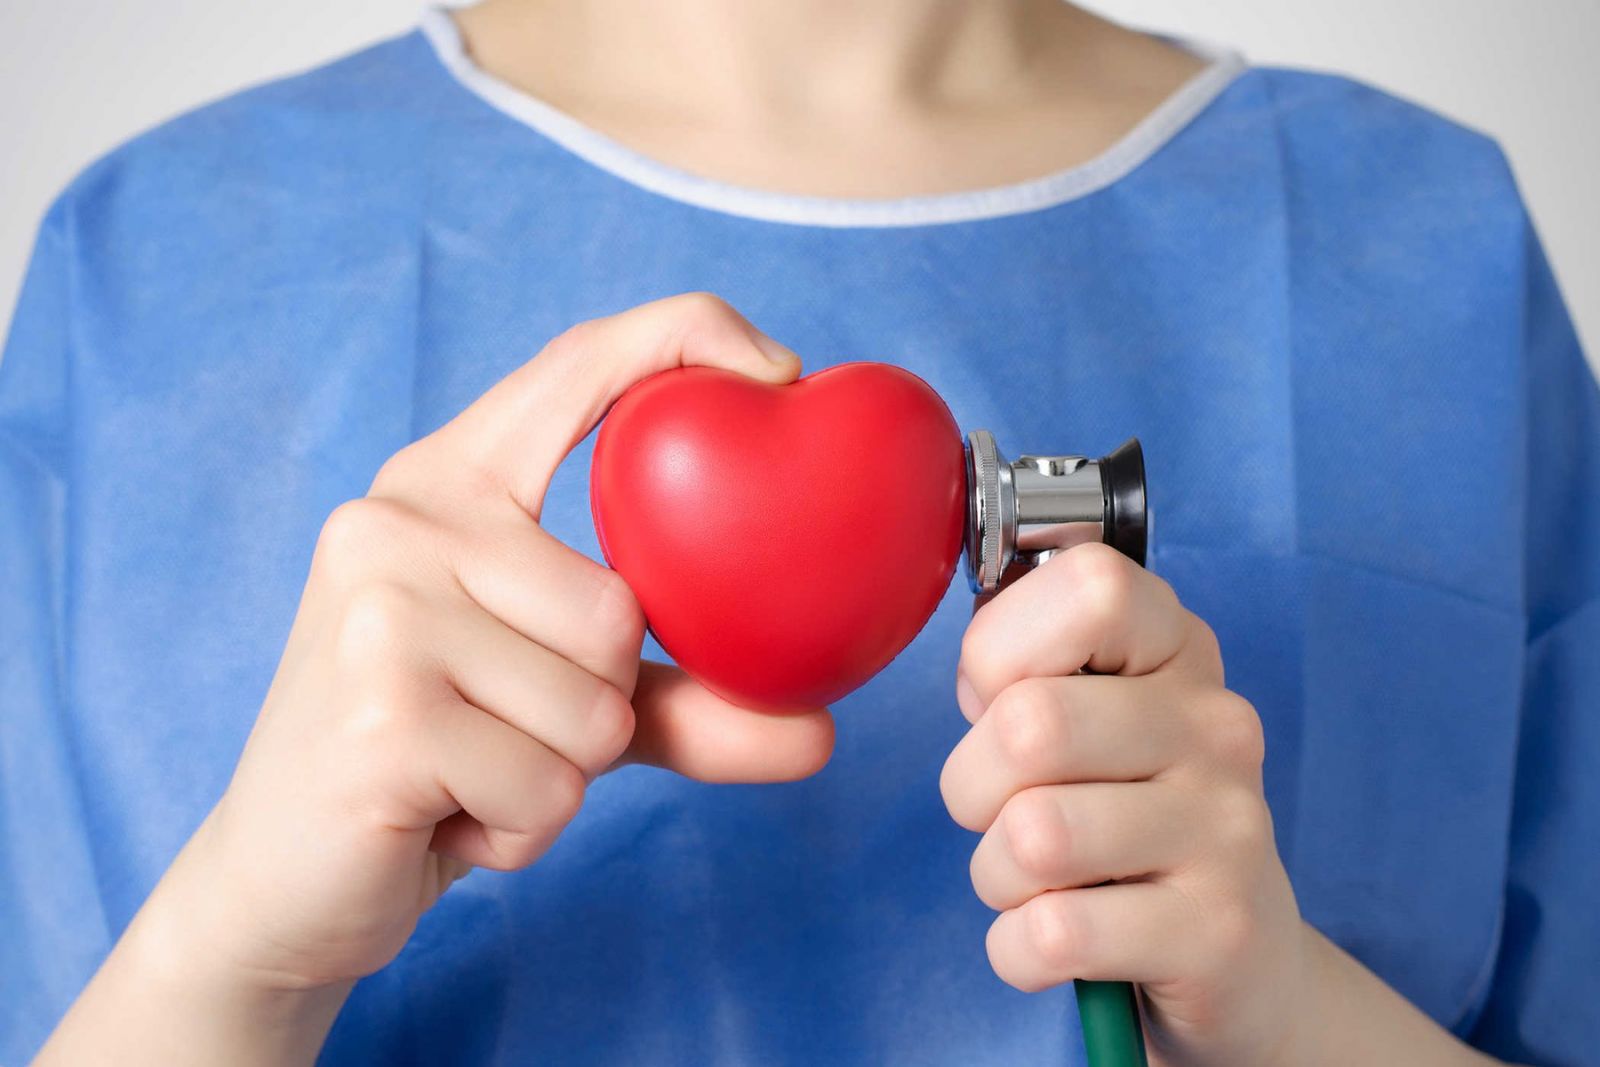 Người bệnh bị đau tim nếu không được phát hiện sớm và xử lý kịp thời có thể dẫn đến đột quỵ và tử vong trong một khoảng thời gian rất ngắn